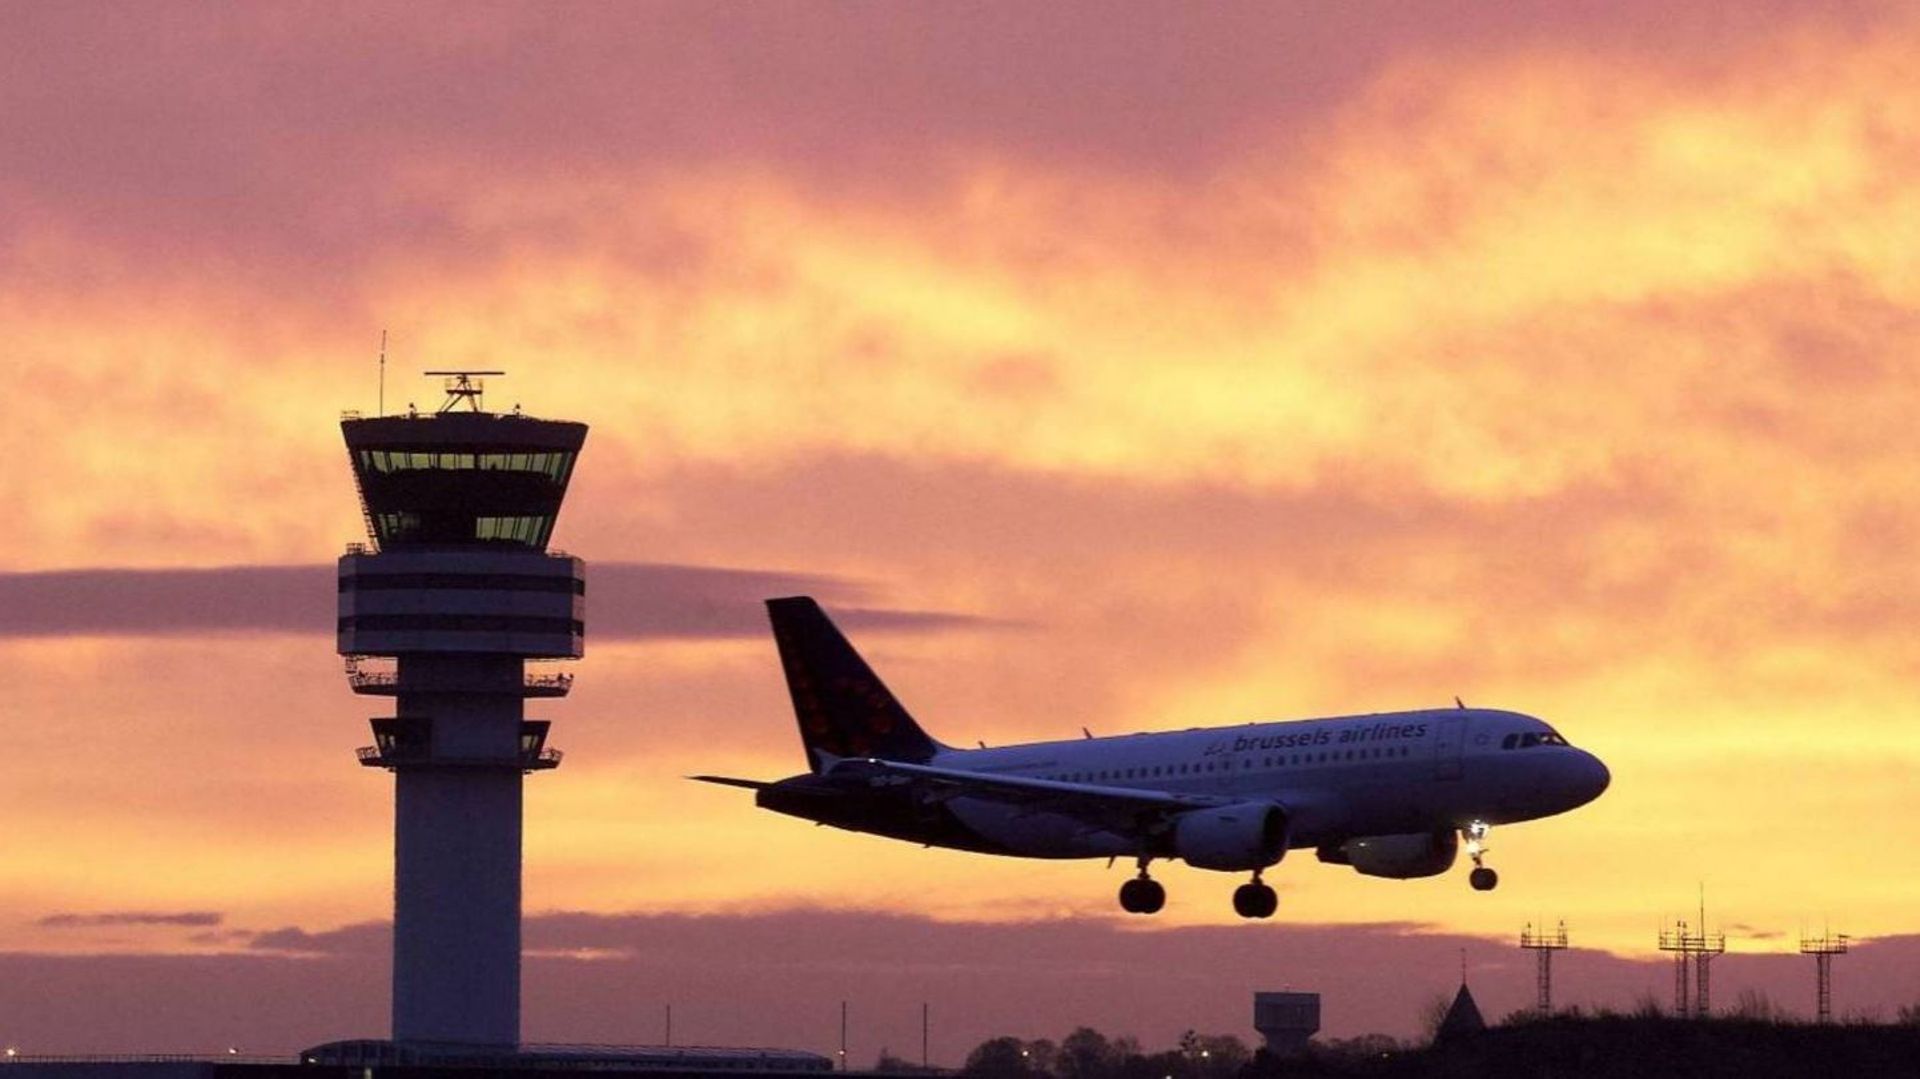 Le gouvernement bruxellois propose d'étendre le régime de nuit (+ 1 heure) à l'aéroport de Zaventem.